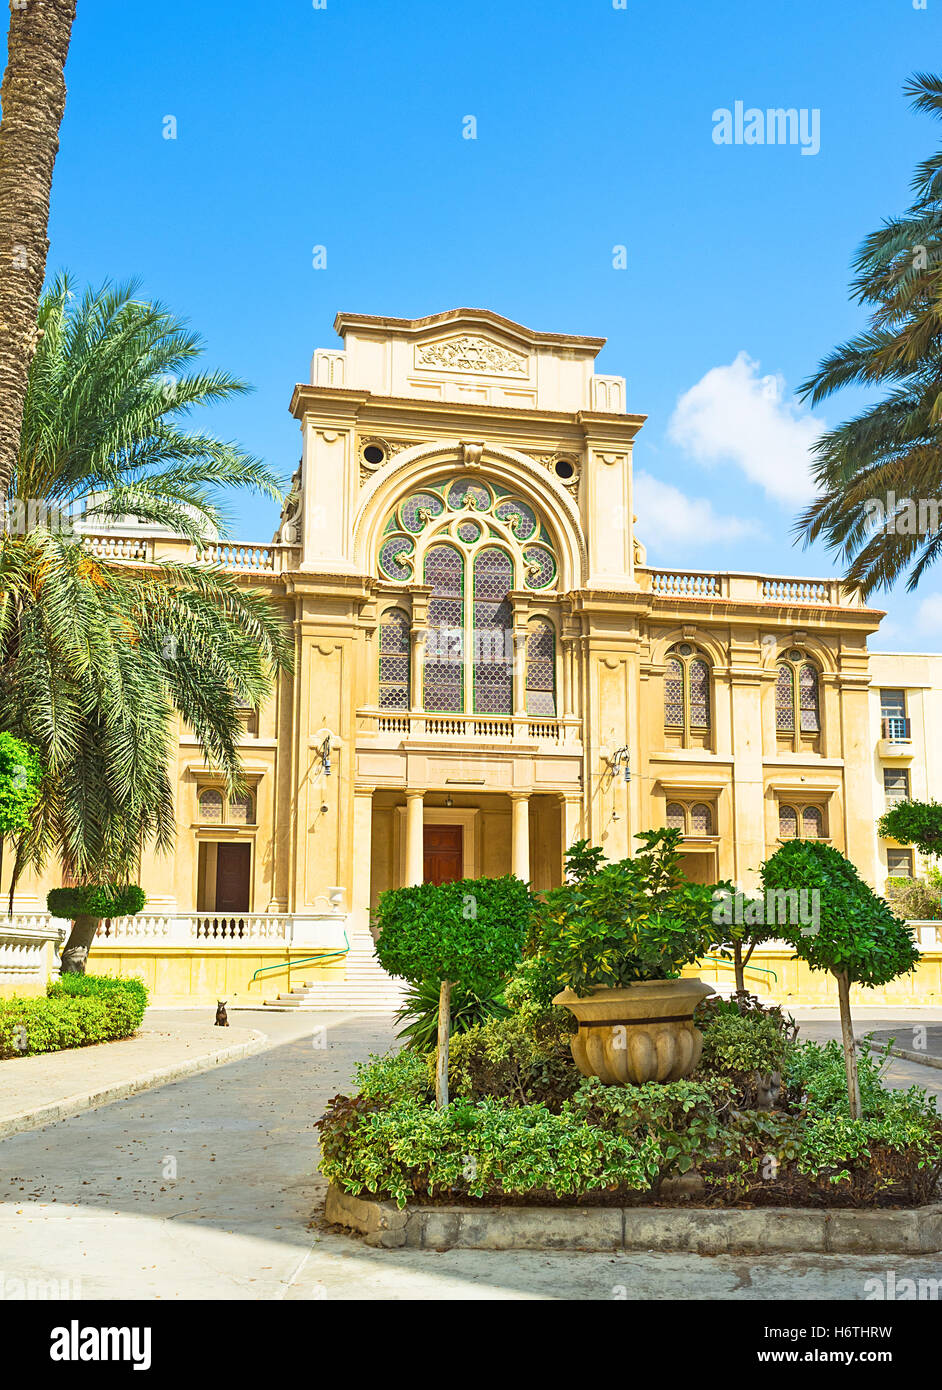 La synagogue Eliyahou Hanavi entoure par le pittoresque jardin vert, Alexandrie, Egypte. Banque D'Images